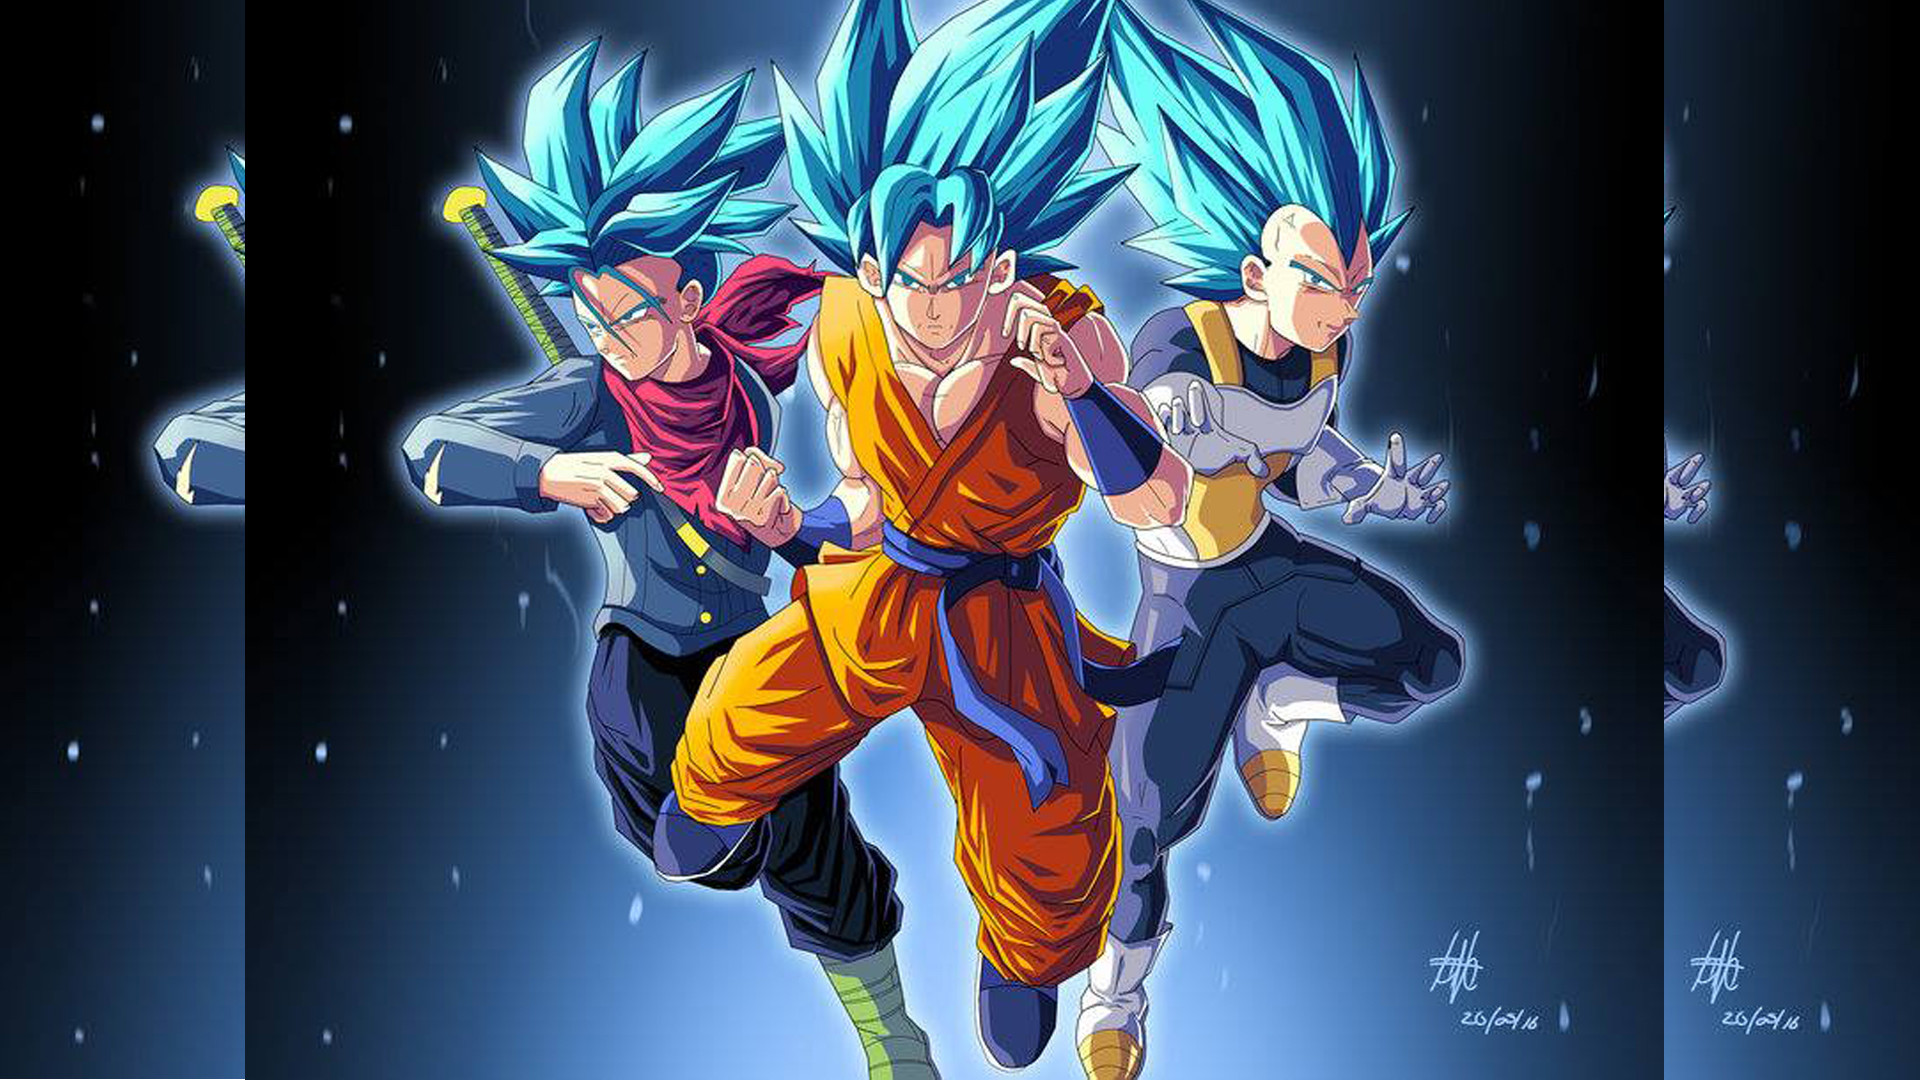 Dragon Ball Z Wallpaper 23 of 49 Son Goku Childhood Trunks, Goku and Vegeta for Super Saiyan Wallpaper